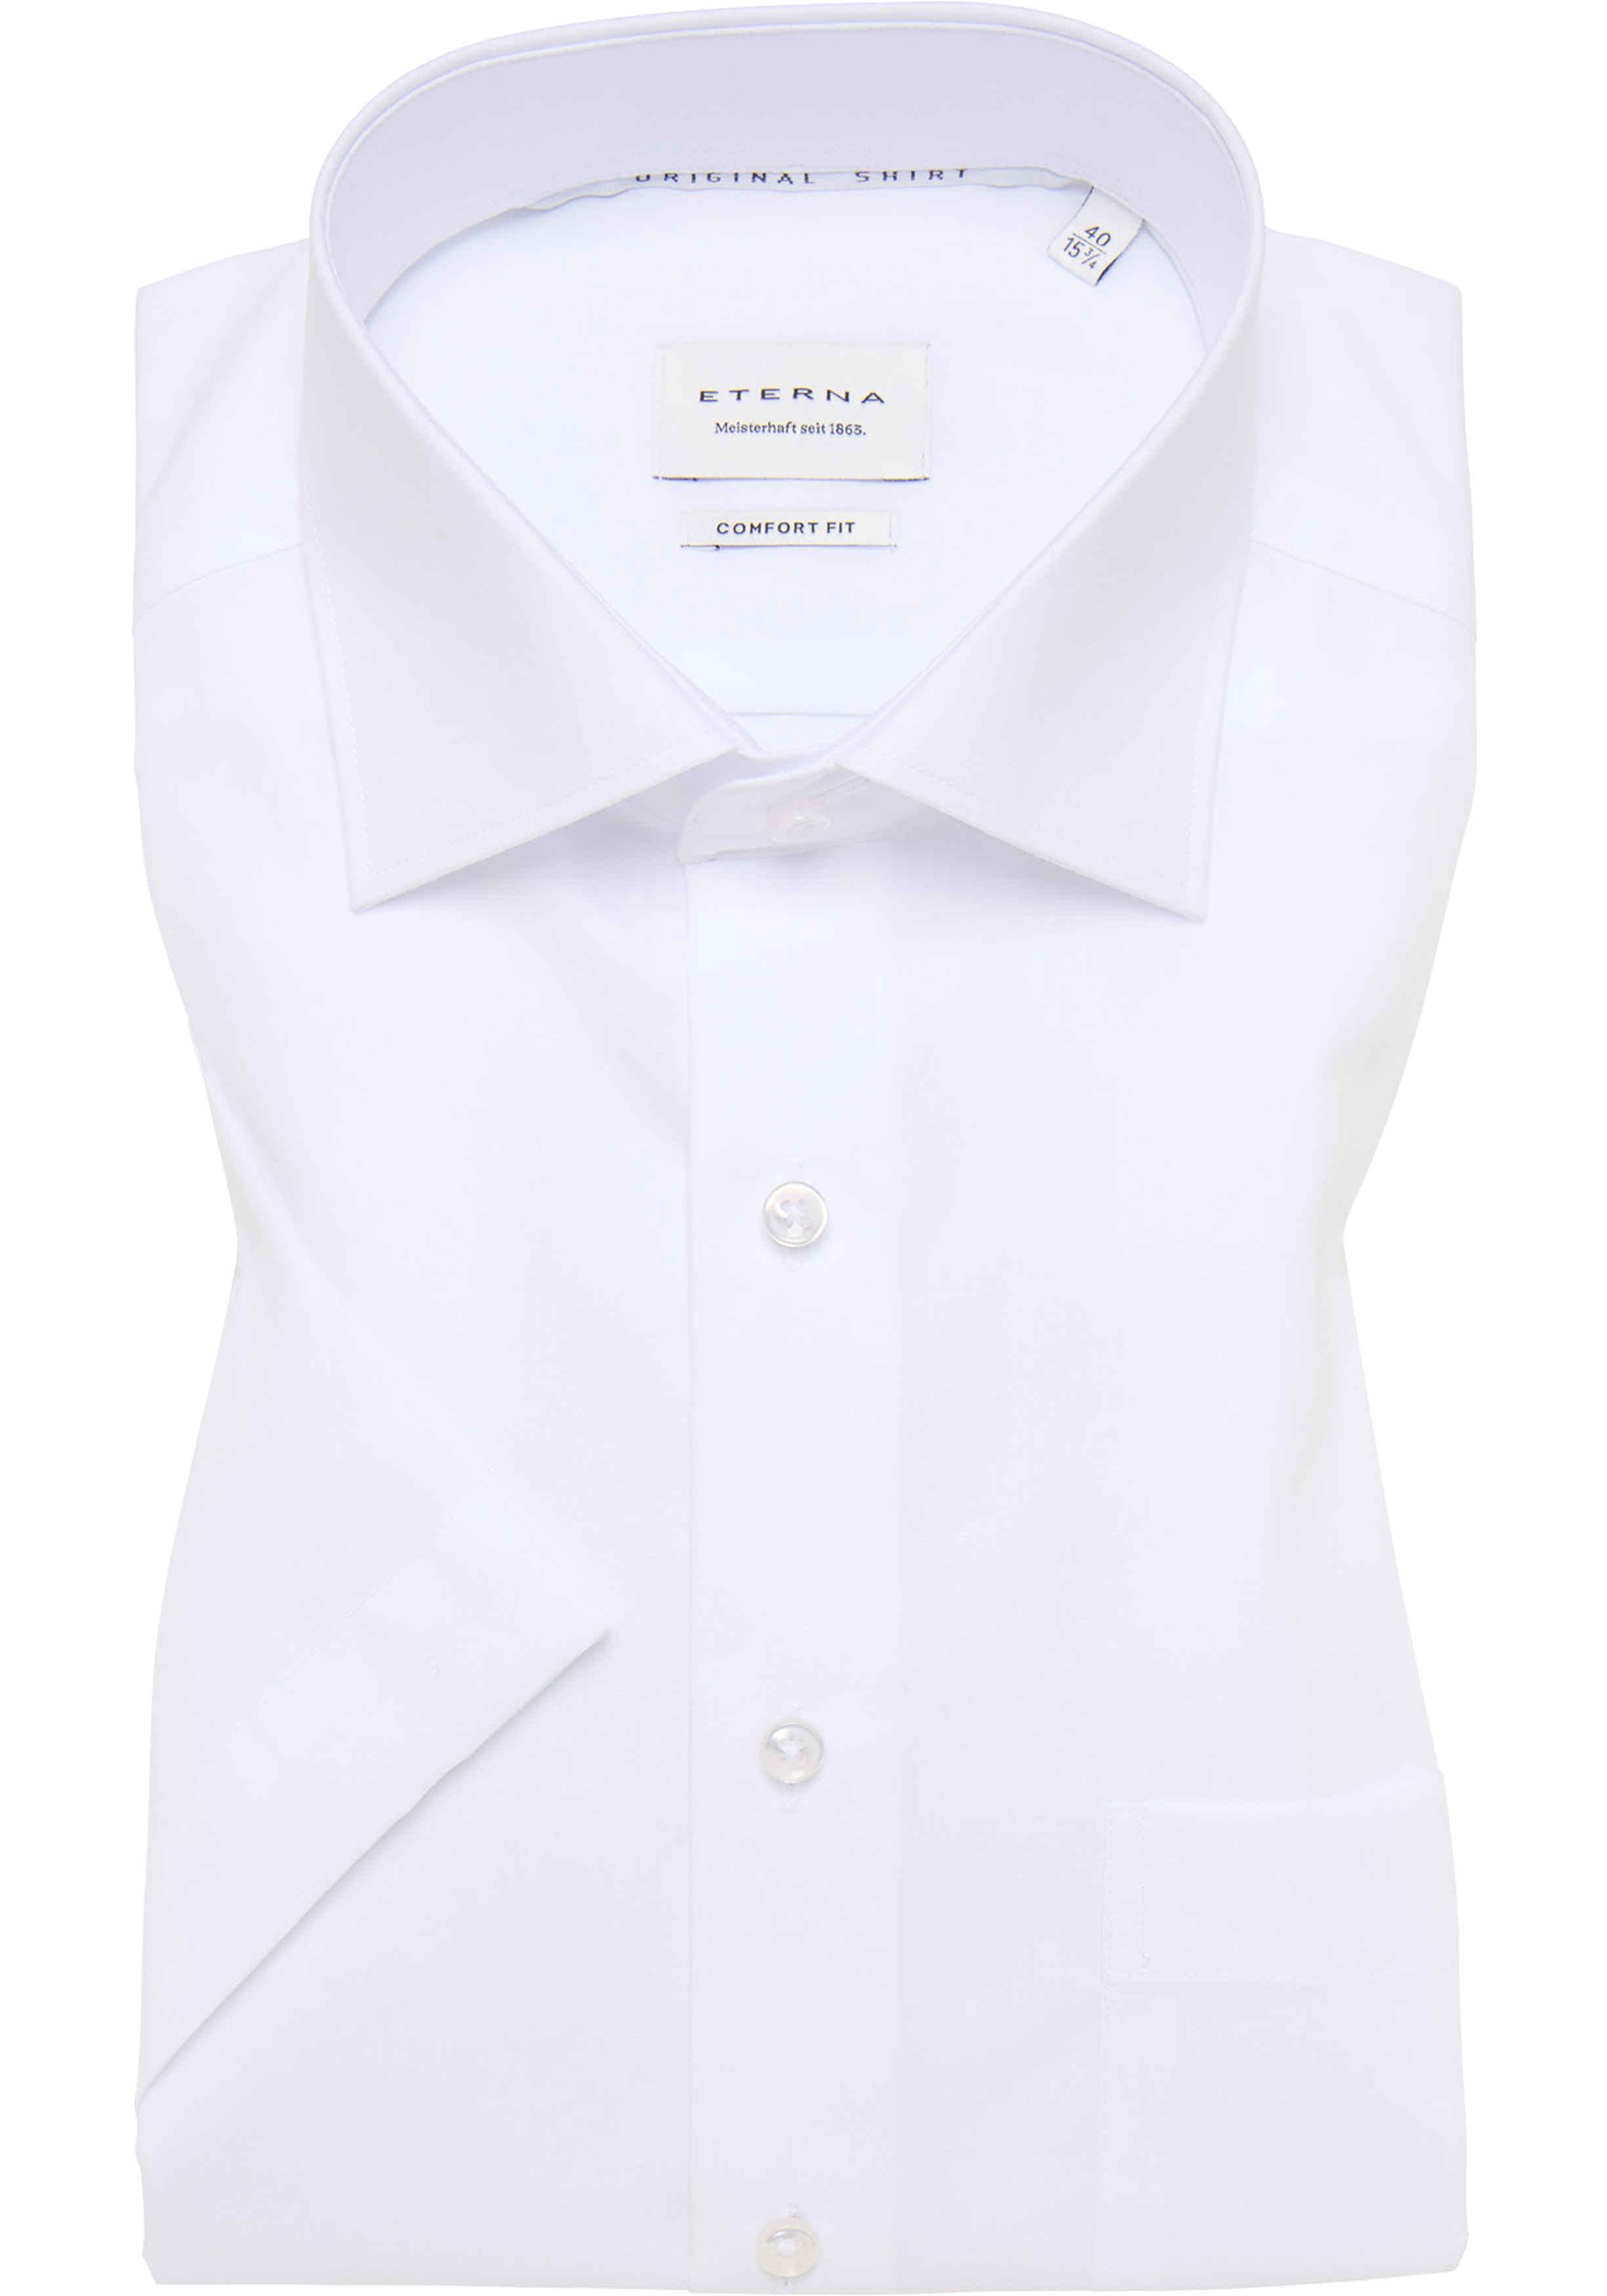 ETERNA comfort fit overhemd korte mouw, popeline, wit